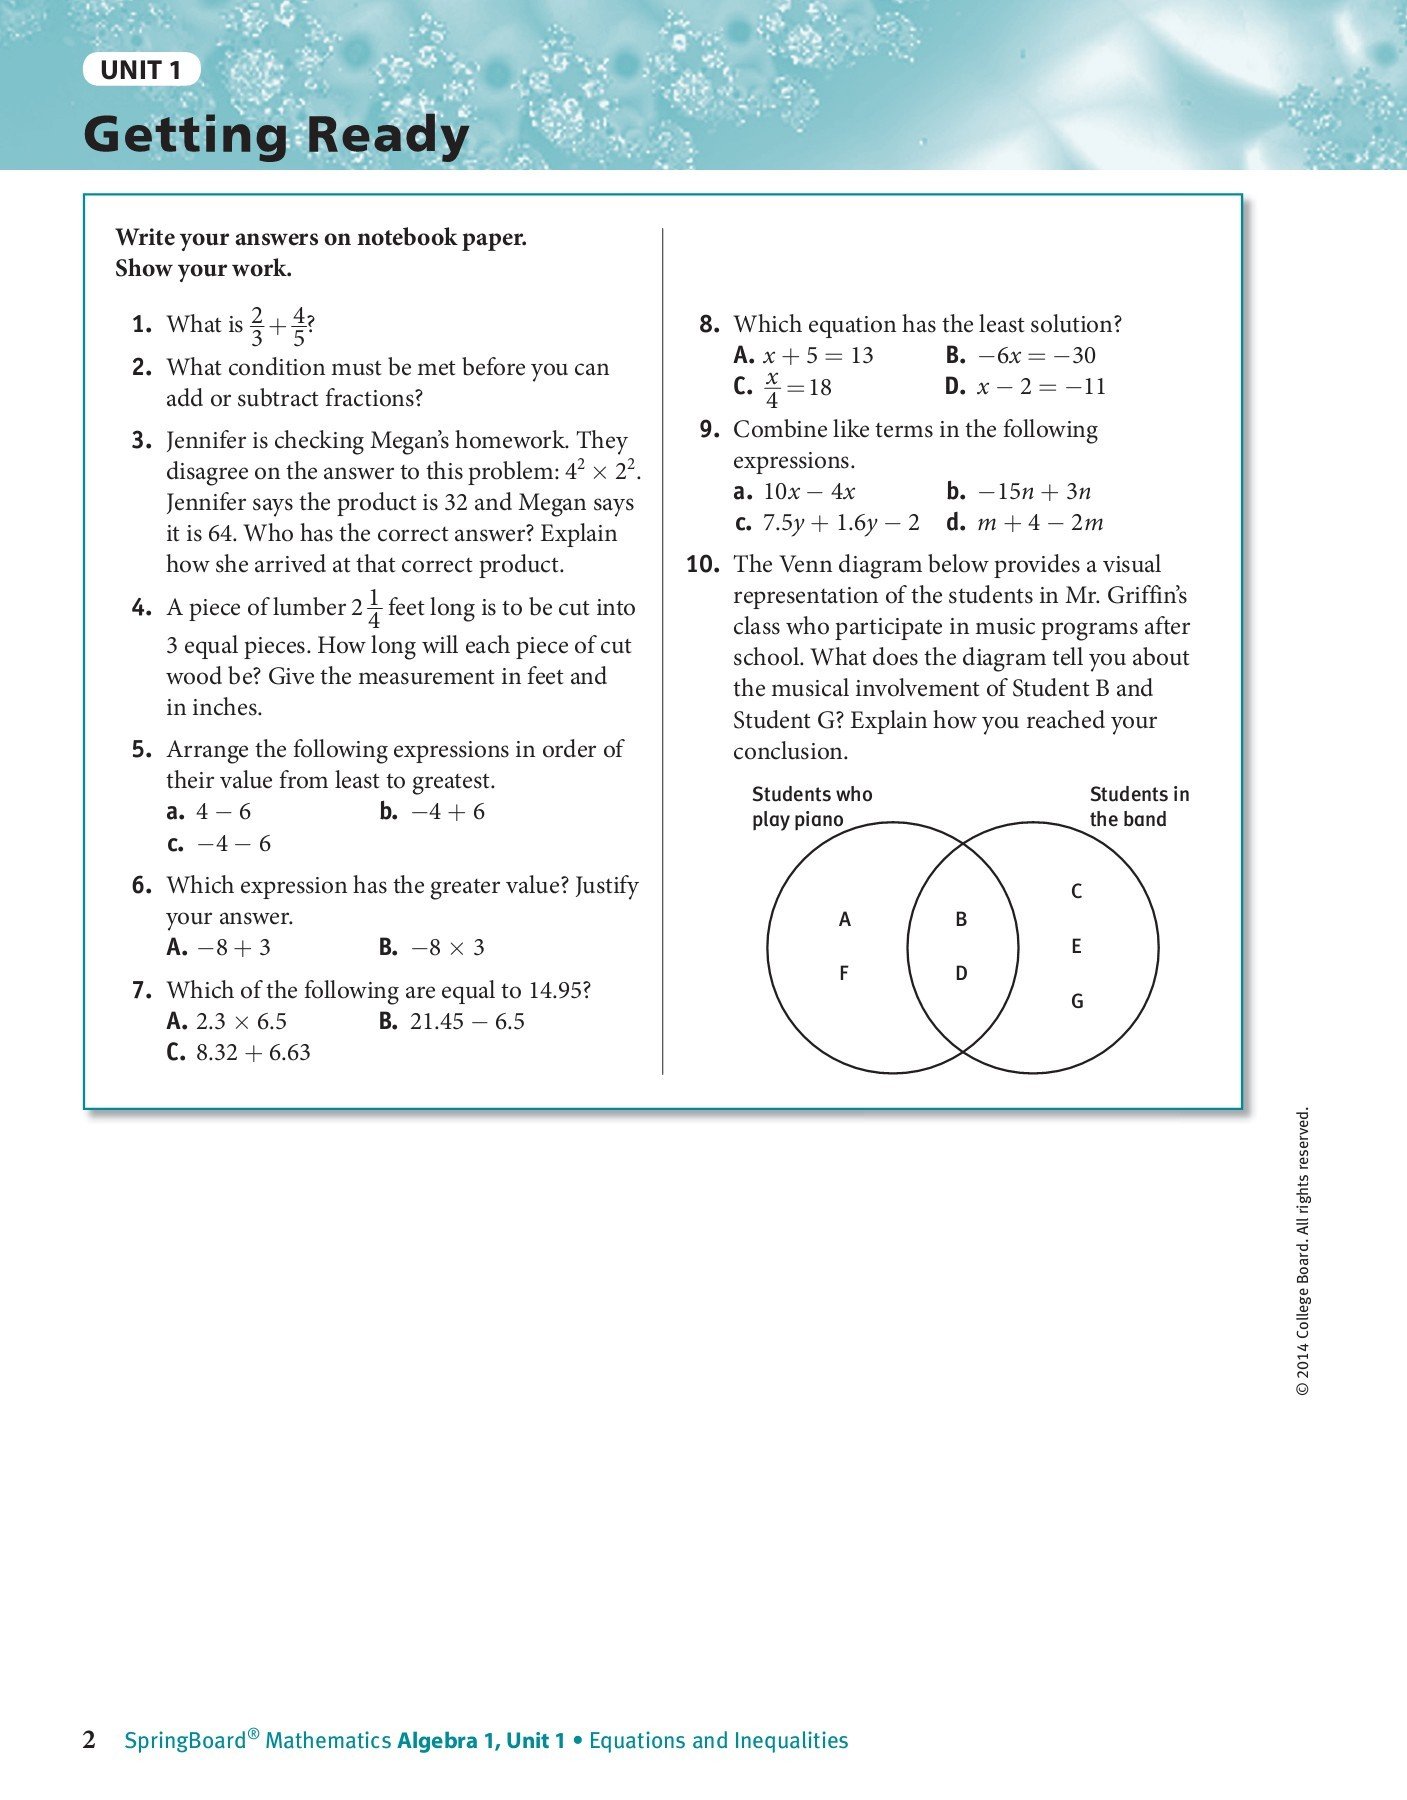 Springboard algebra 1 answer key pdf casaruraldavina.com